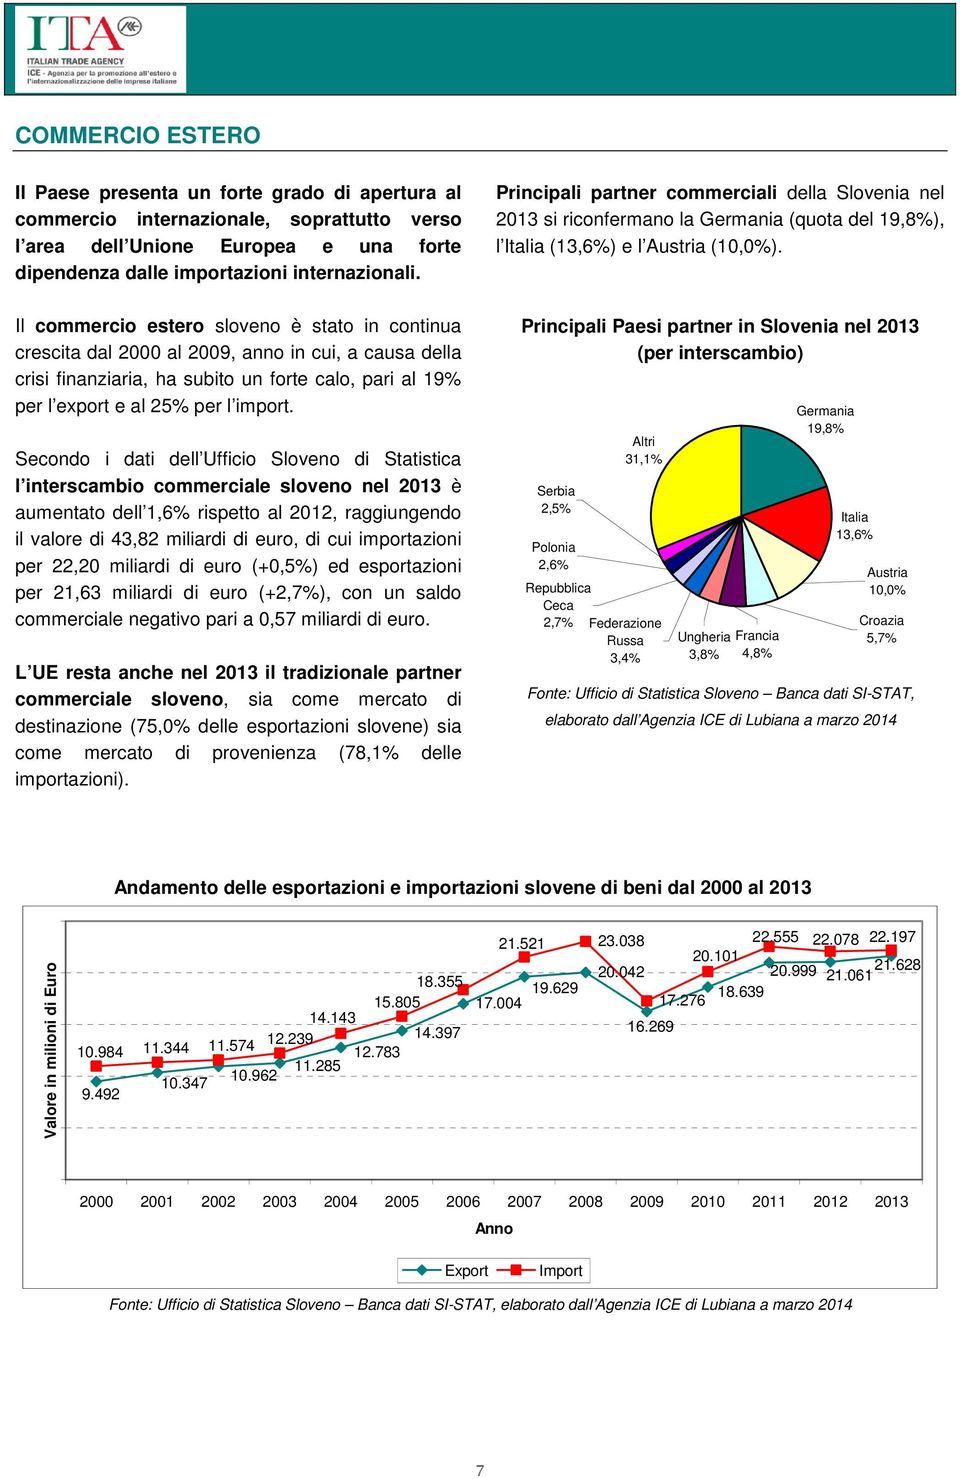 Secondo i dati dell Ufficio Sloveno di Statistica l interscambio commerciale sloveno nel 2013 è aumentato dell 1,6% rispetto al 2012, raggiungendo il valore di 43,82 miliardi di euro, di cui